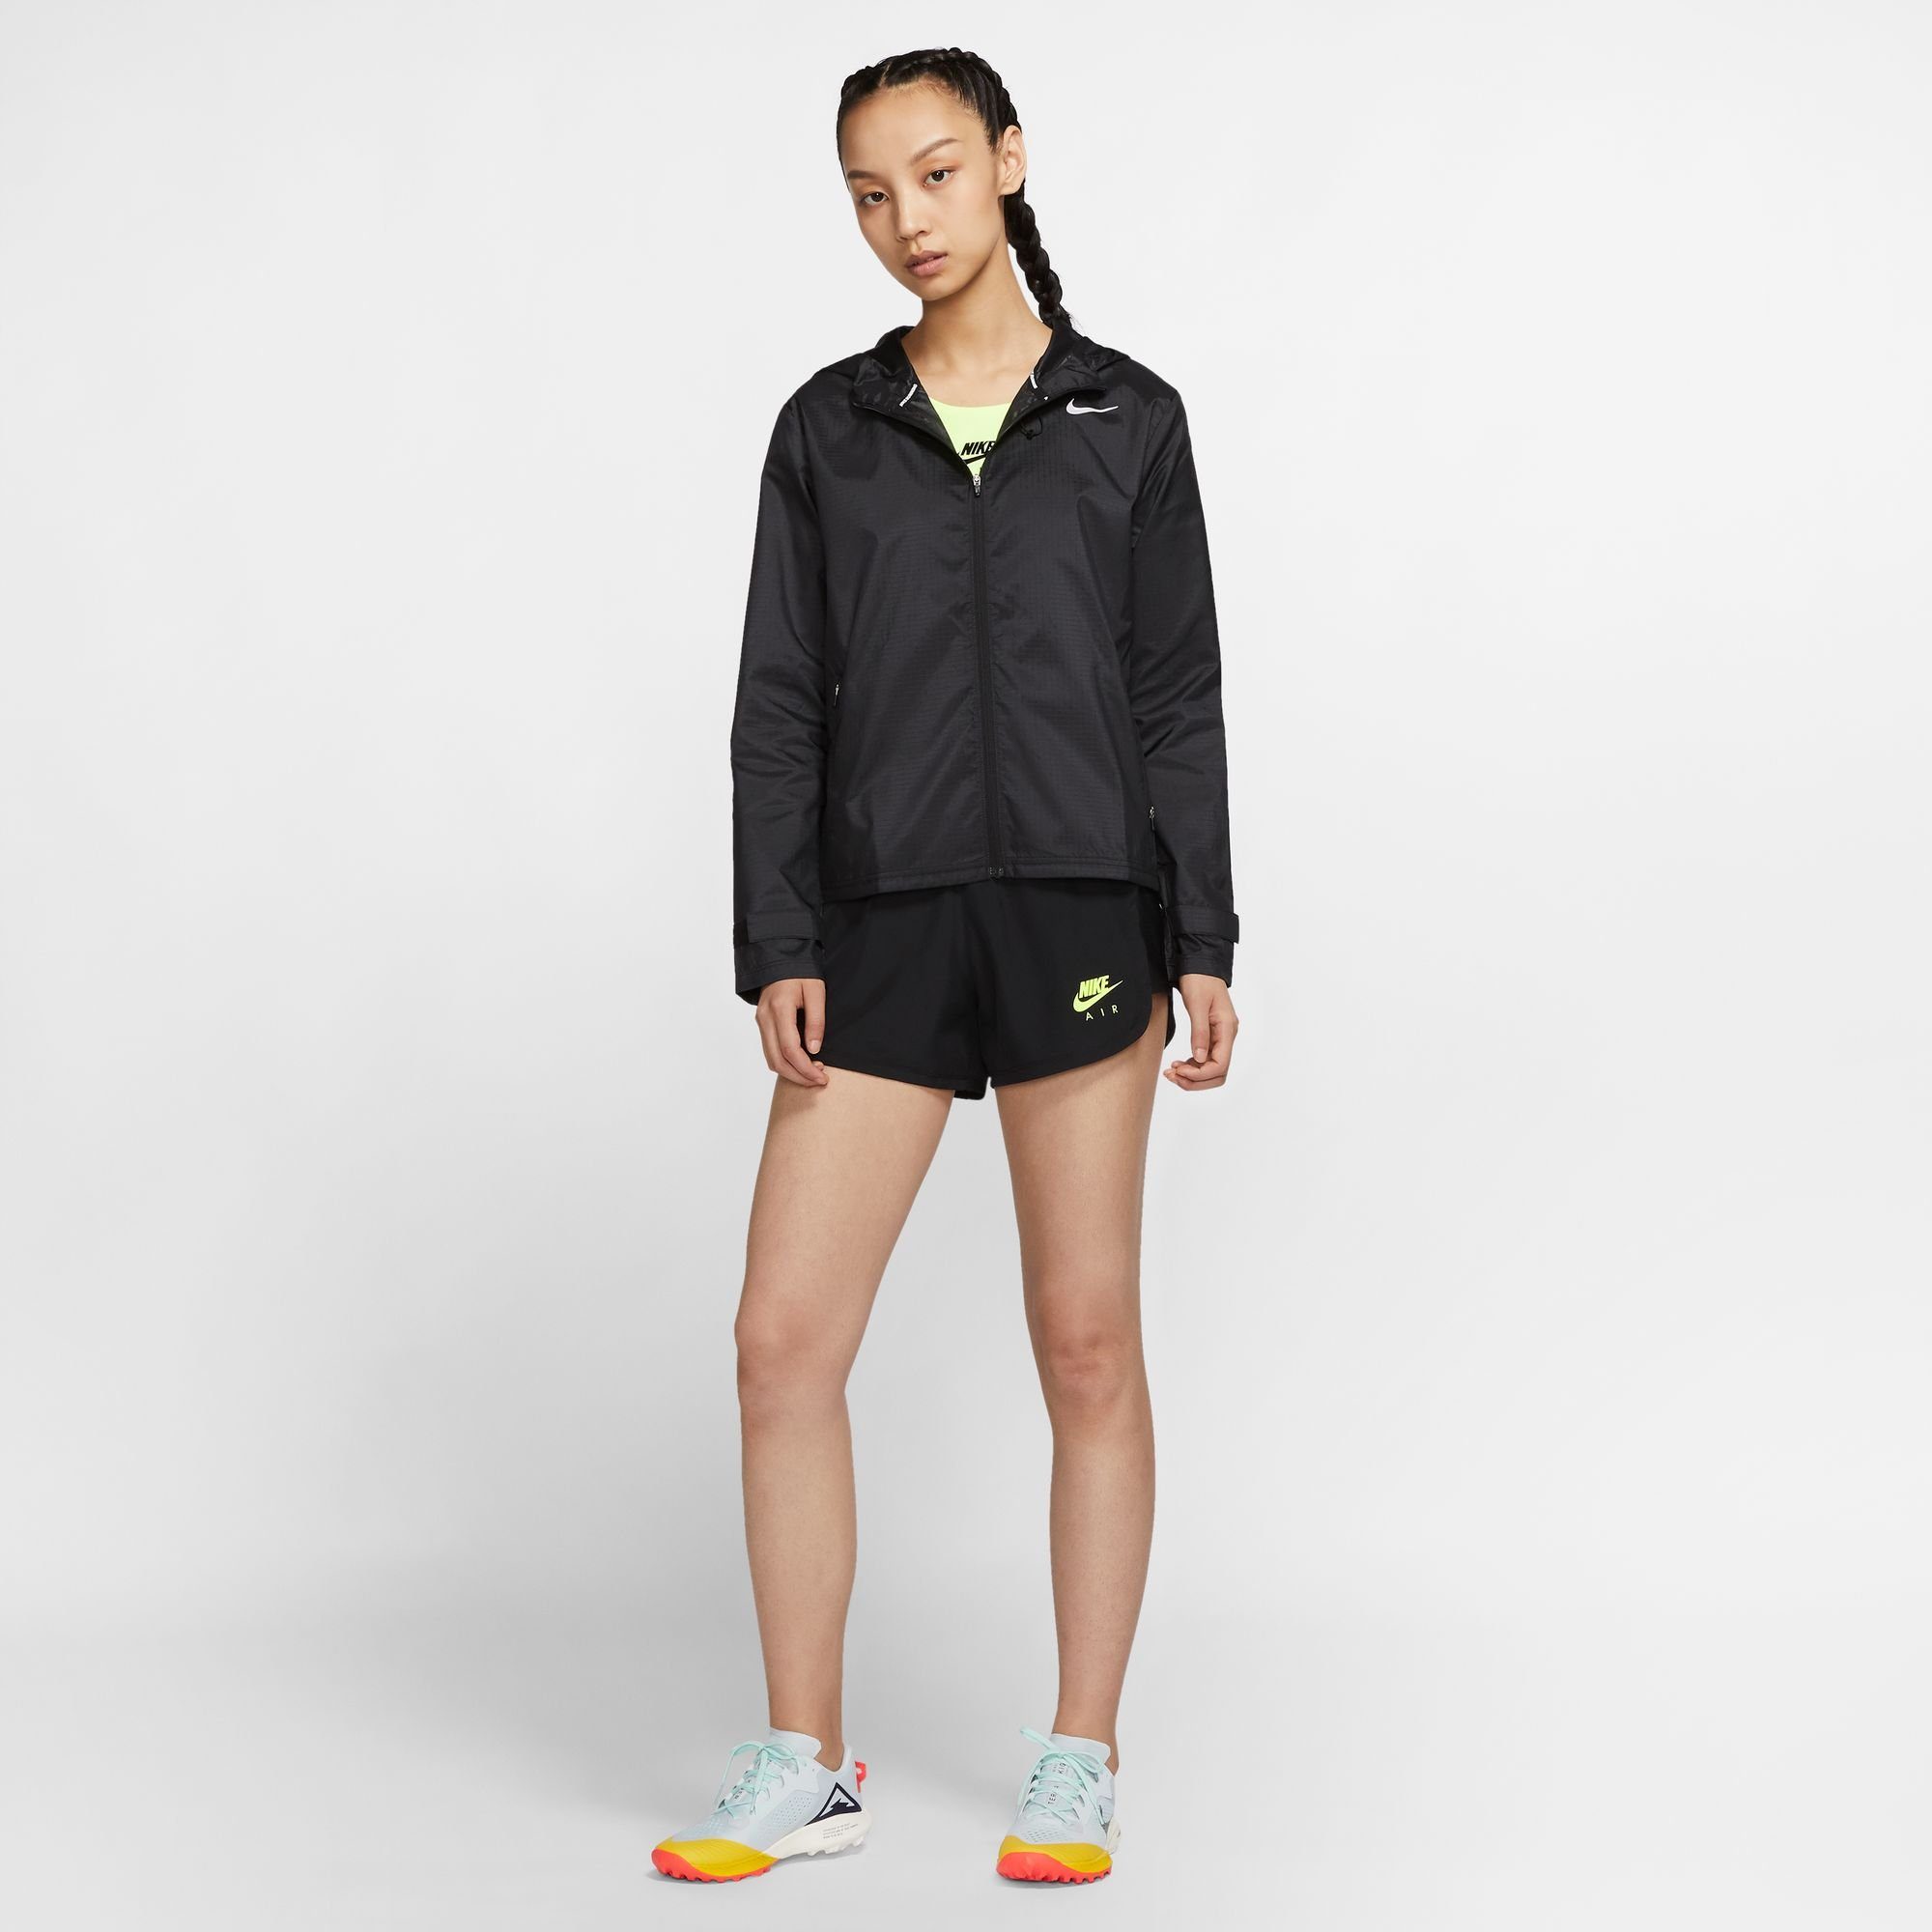 Jacket Nike Essential Laufjacke Running schwarz Women's